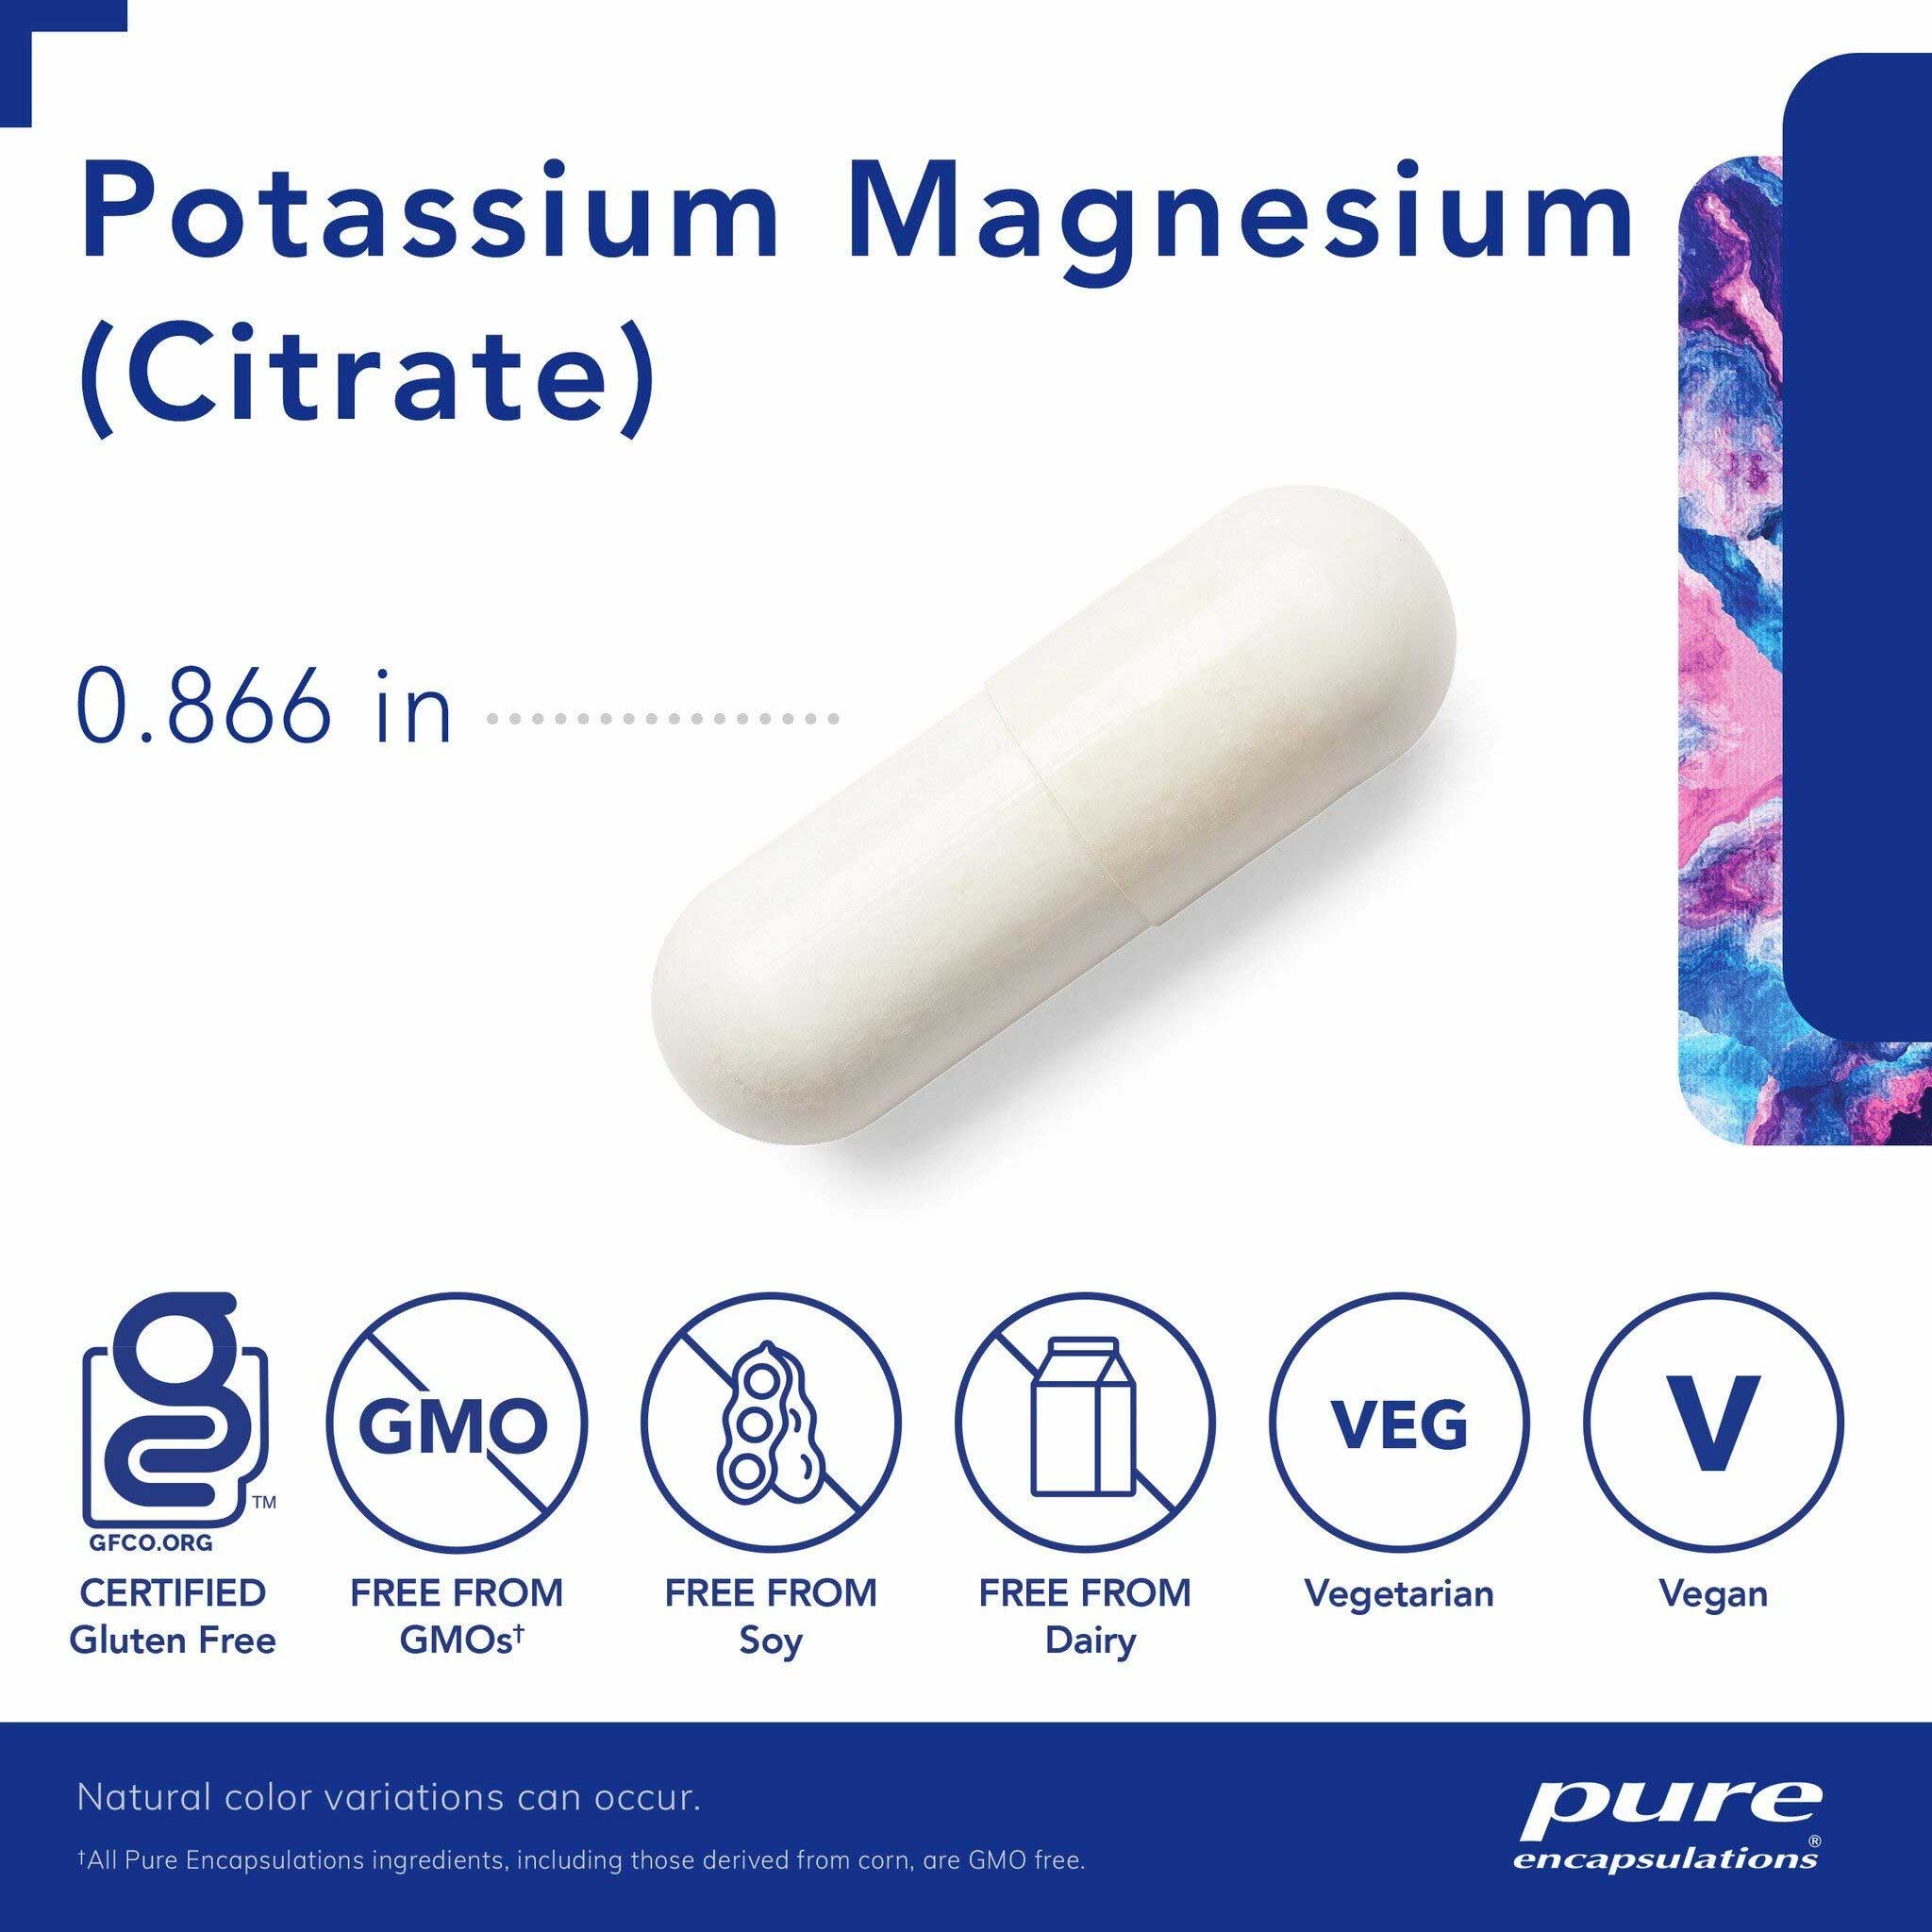 Pure Encapsulations Potassium Magnesium (Citrate) Capsules